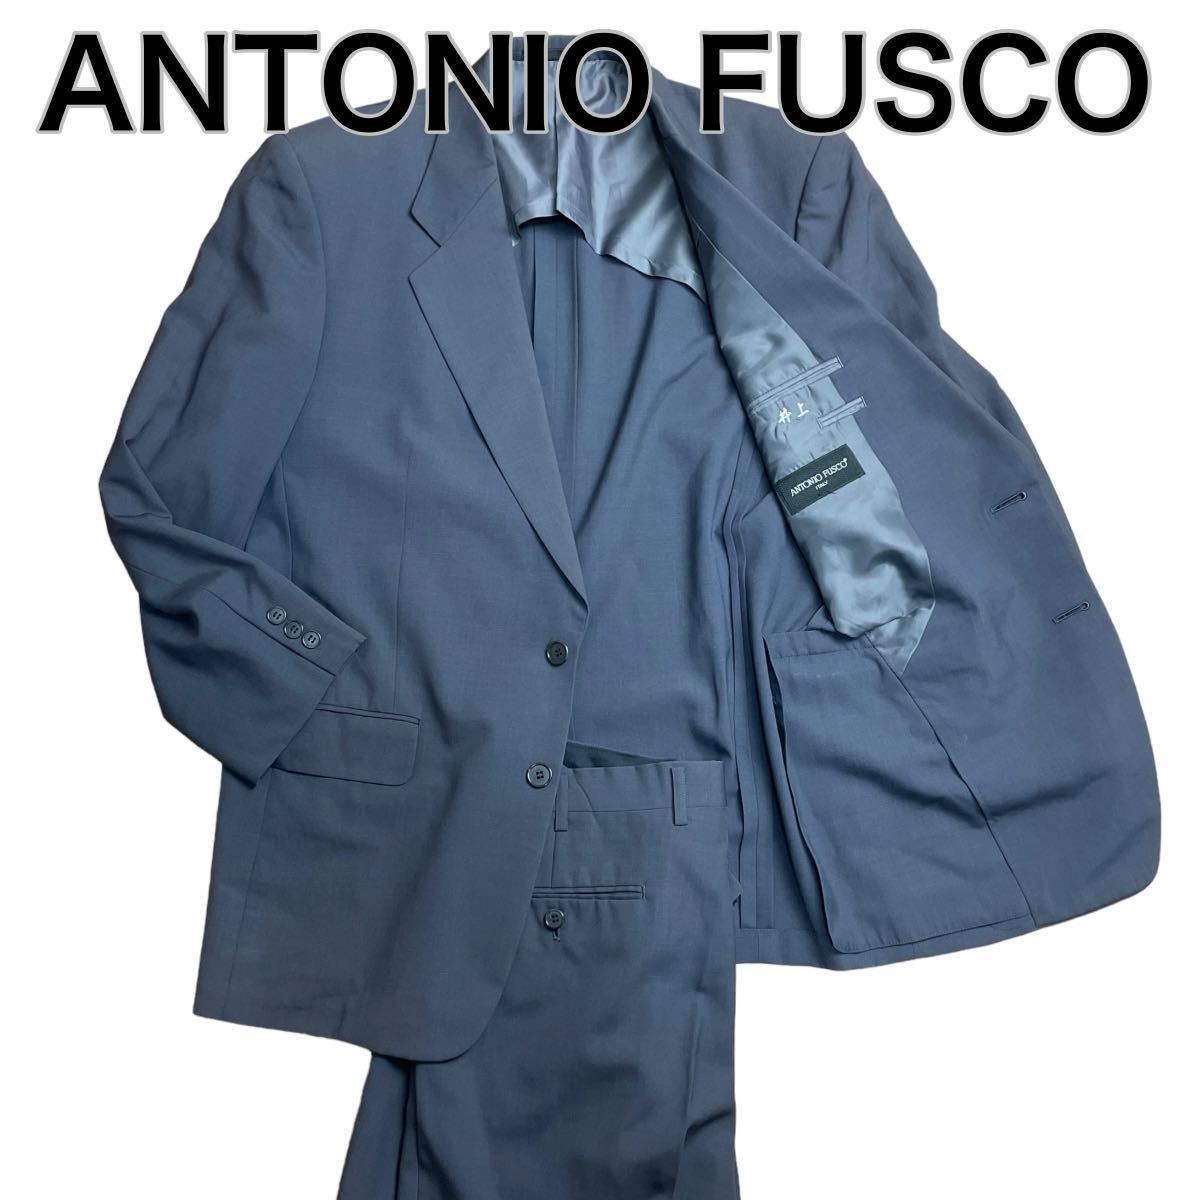 ANTONIO FUSCO アントニオフスコ セットアップ スーツ ネイビーグレー L